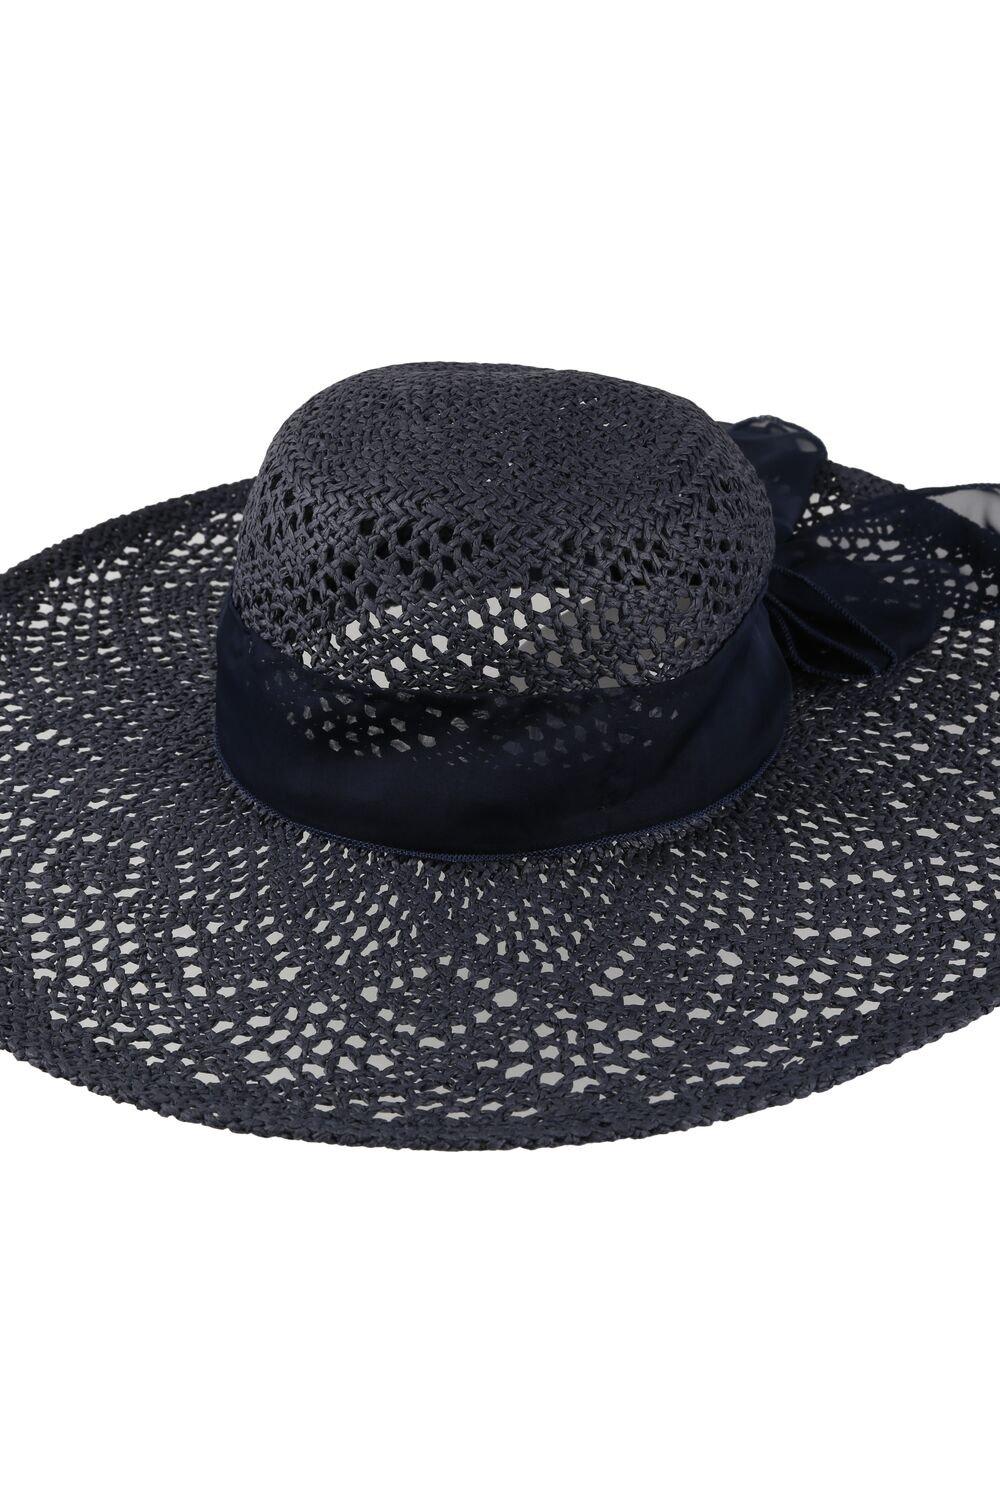 'Taura III' Соломенная бумажная шляпа от солнца Regatta, синий детская летняя широкополая уличная шляпа с защитой от уф лучей солнцезащитная шляпа без козырька пляжная соломенная шляпа модная соломен